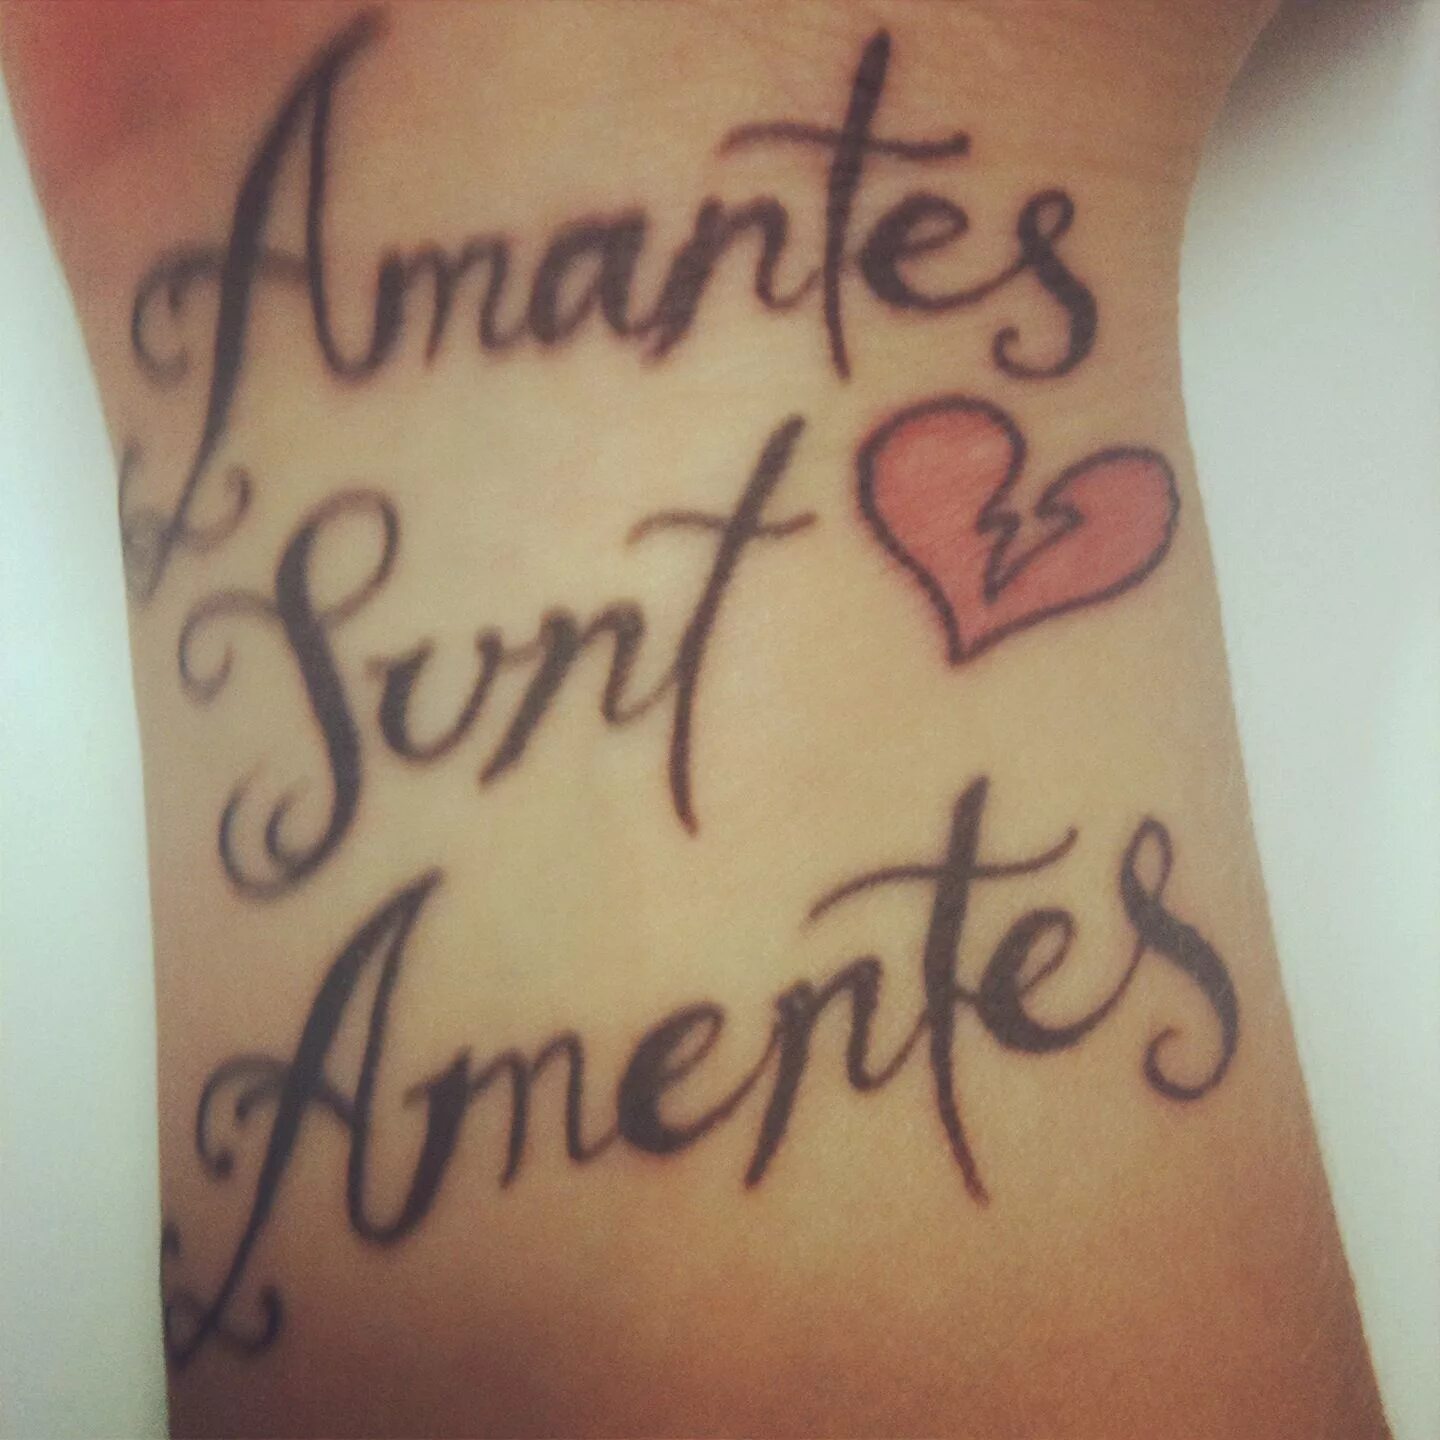 Amantes sunt amentes перевод. Татуировка amantes sunt AMENTES. Тату с надписью amantes sunt AMENTES. Безумные влюбленные на латыни. Amantes sunt AMENTES красивым шрифтом.